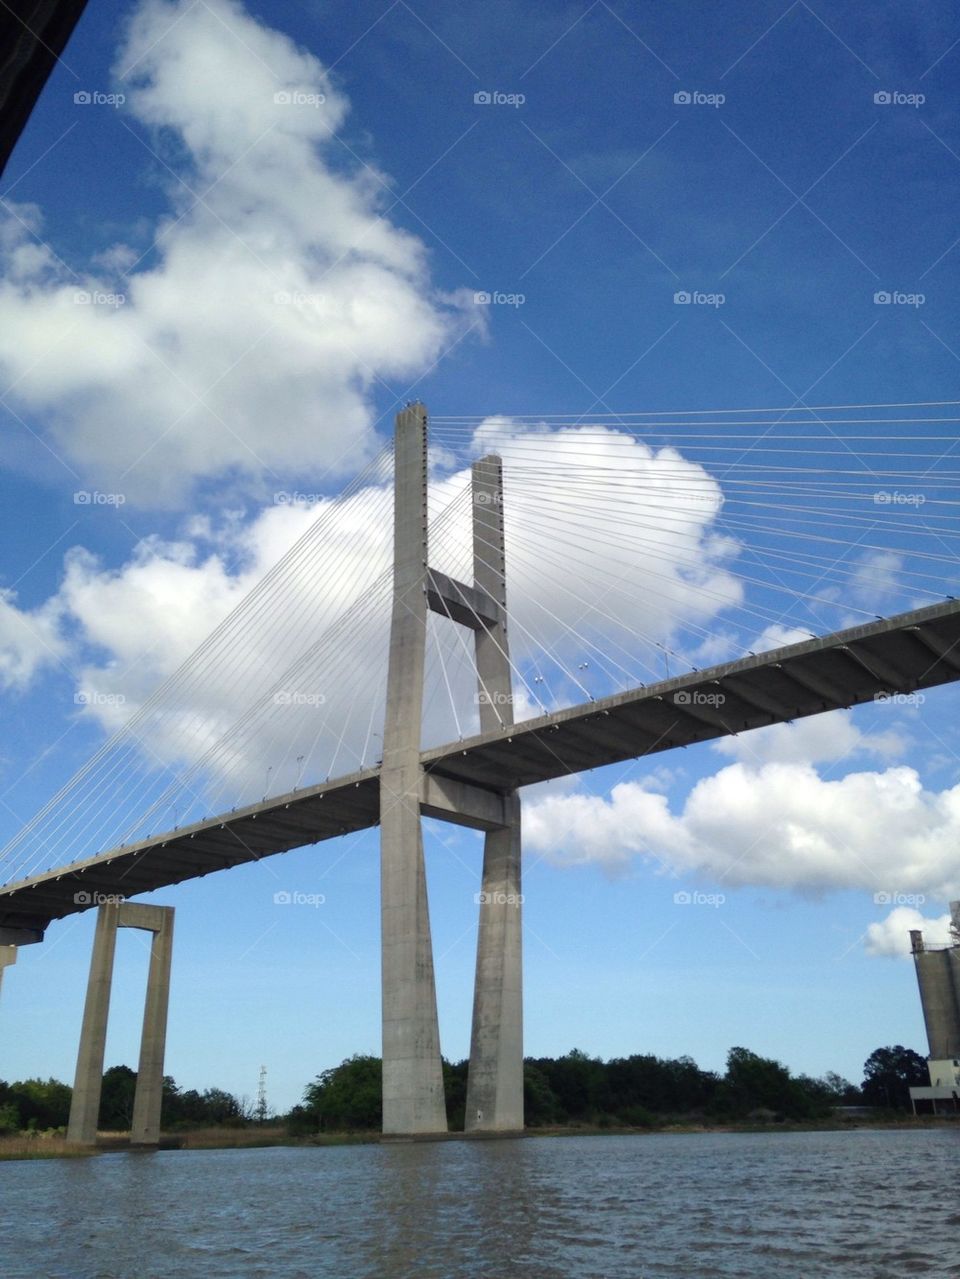 Savannah bridge